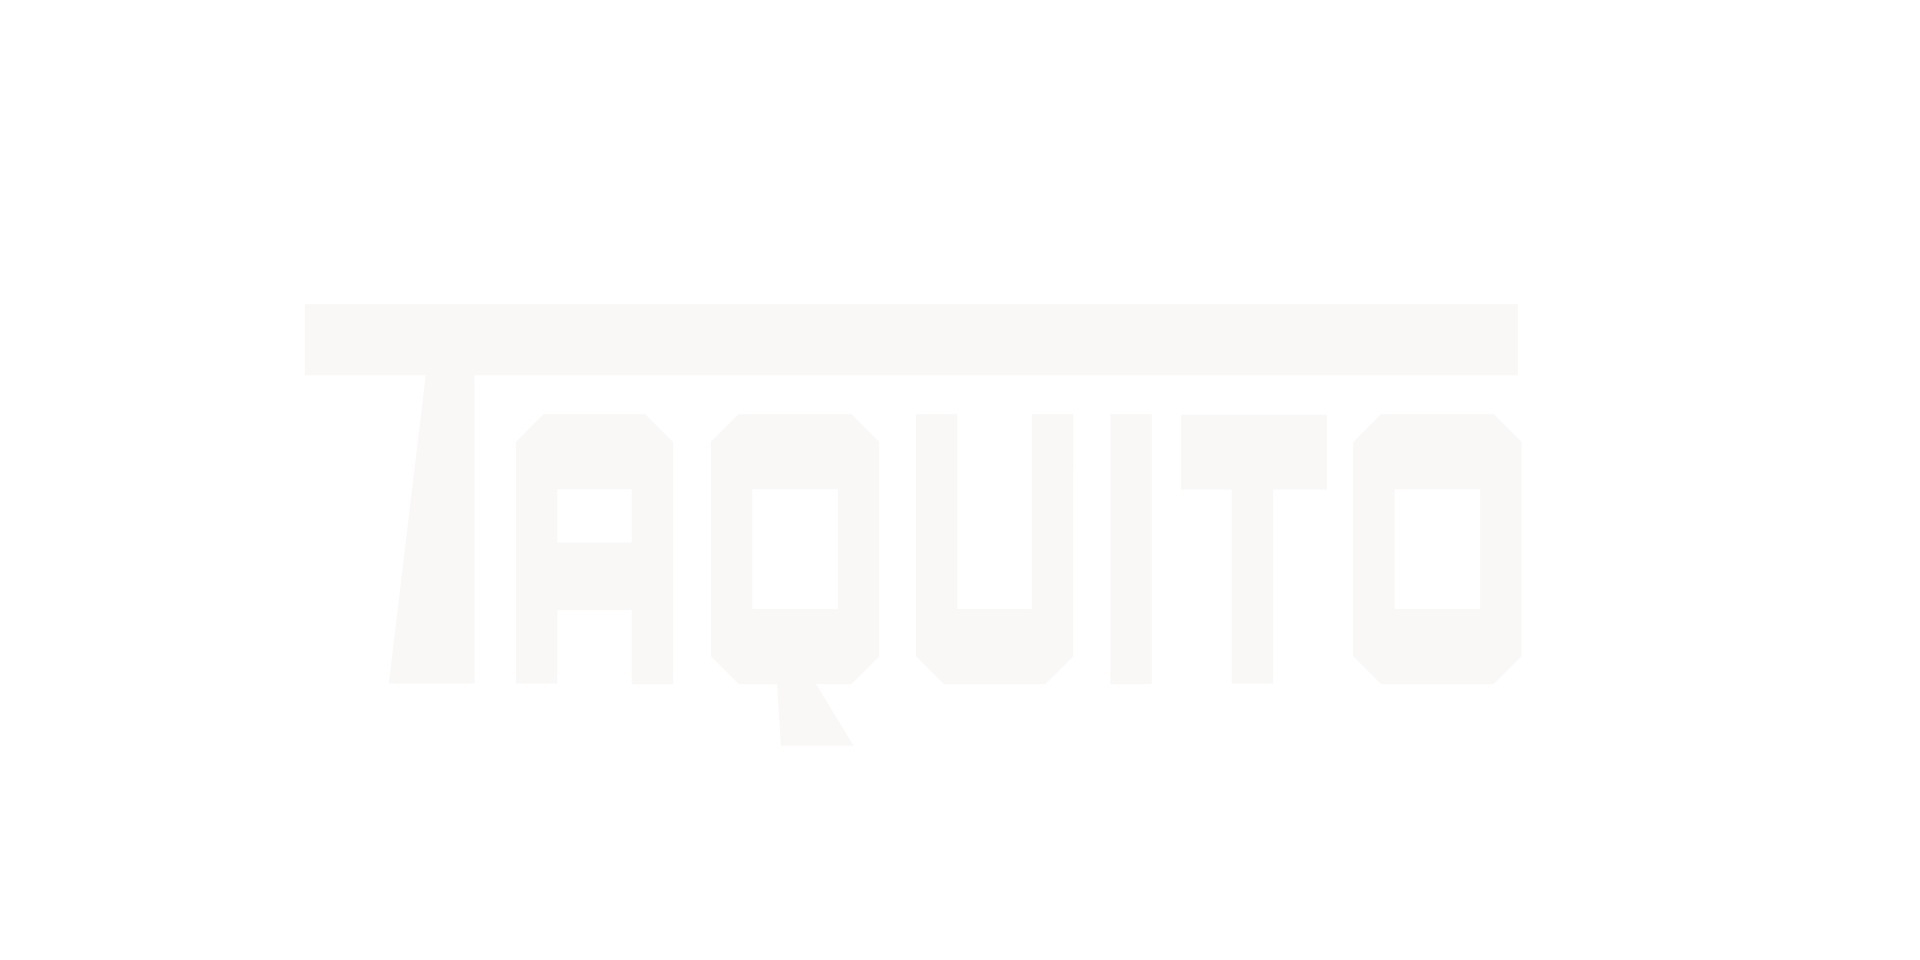 Taquito logo